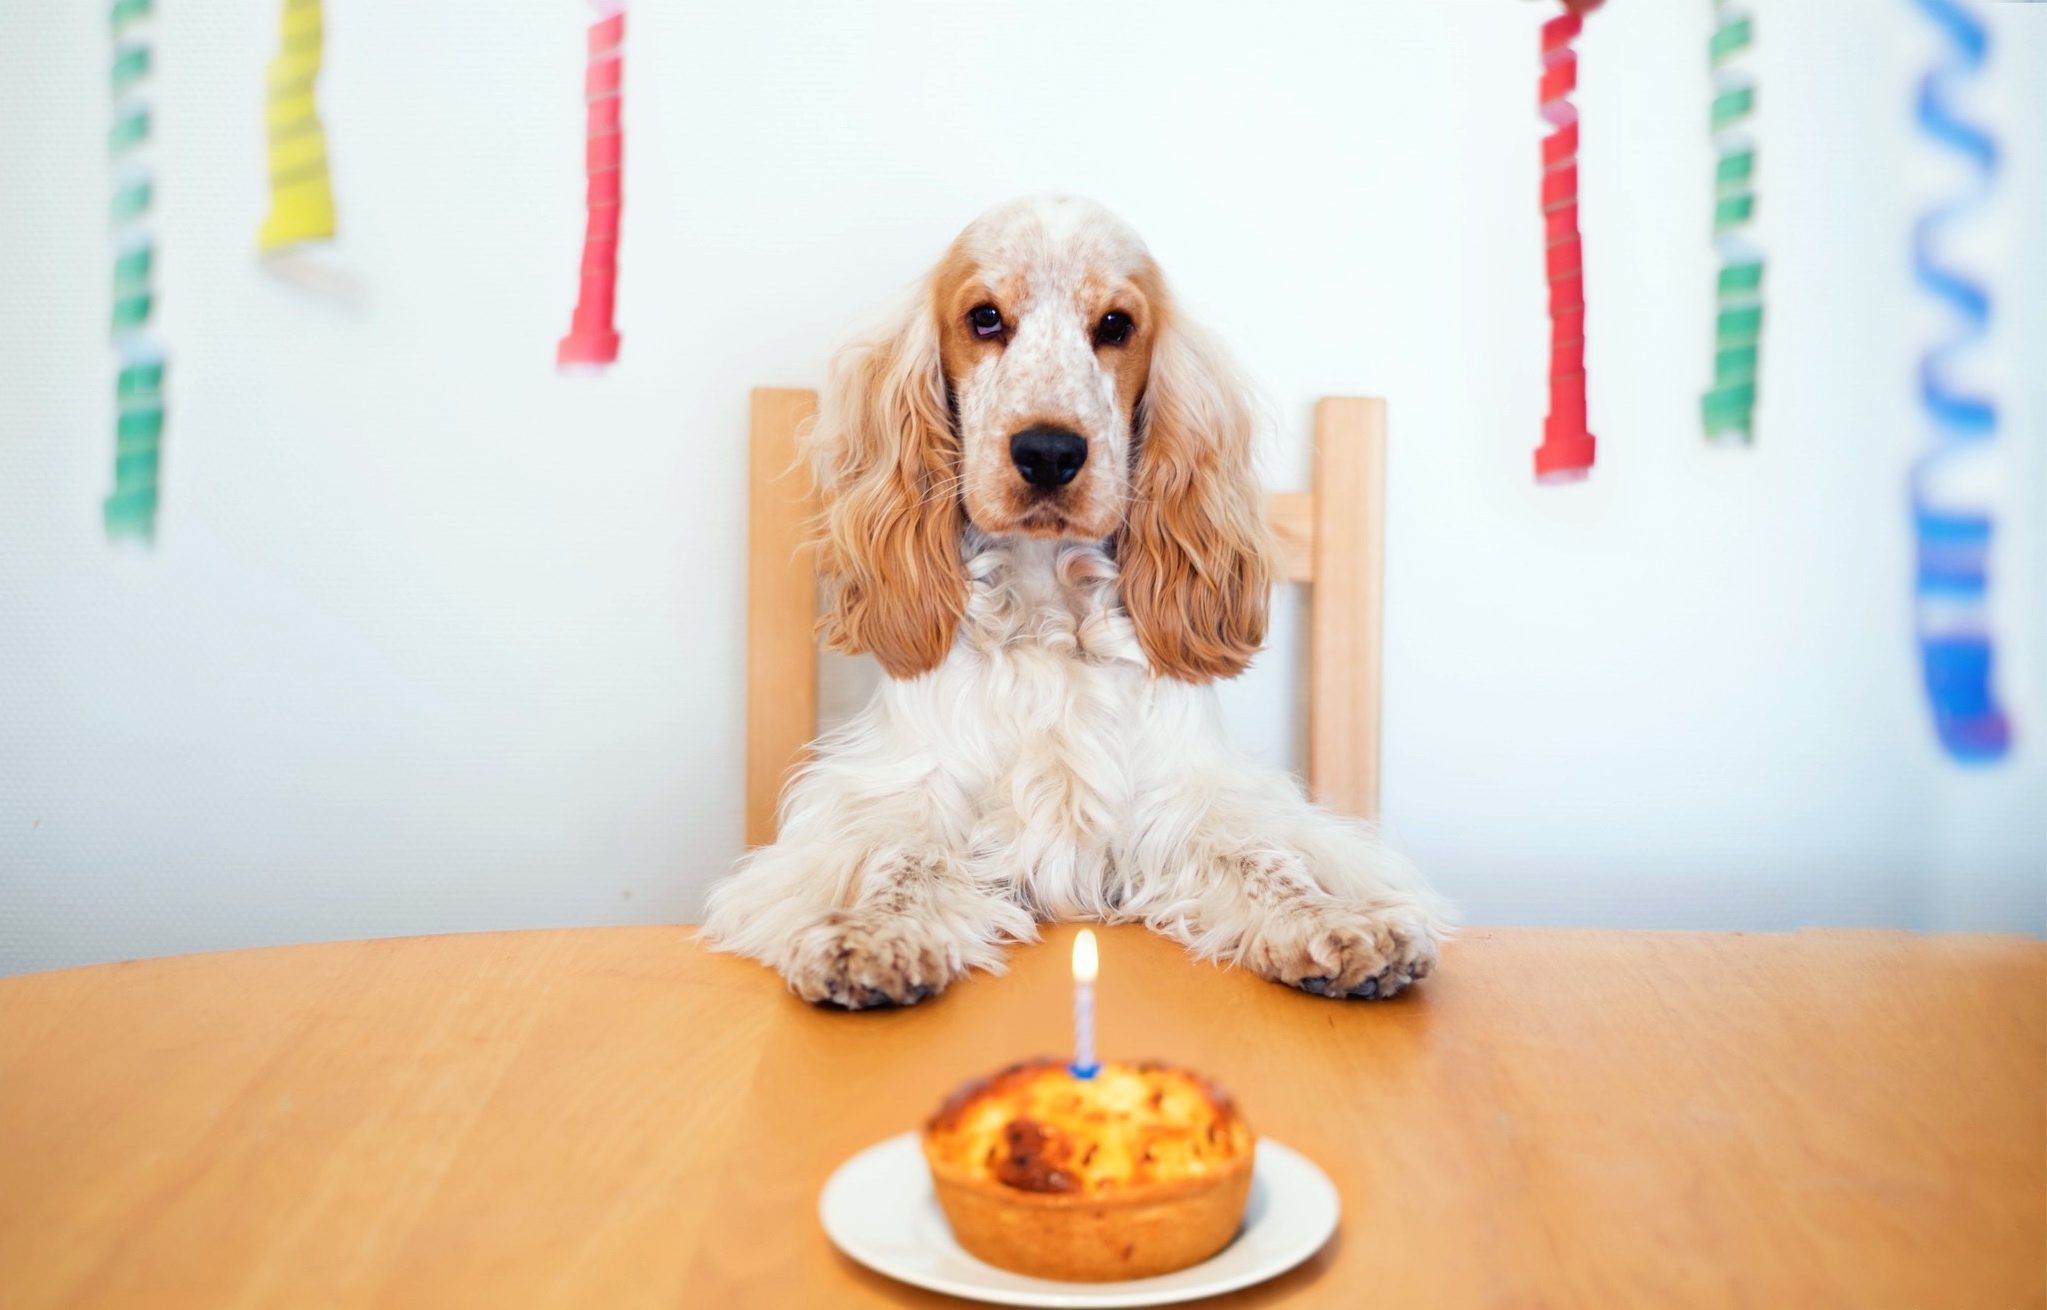 可卡犬用蛋糕庆祝自己的生日